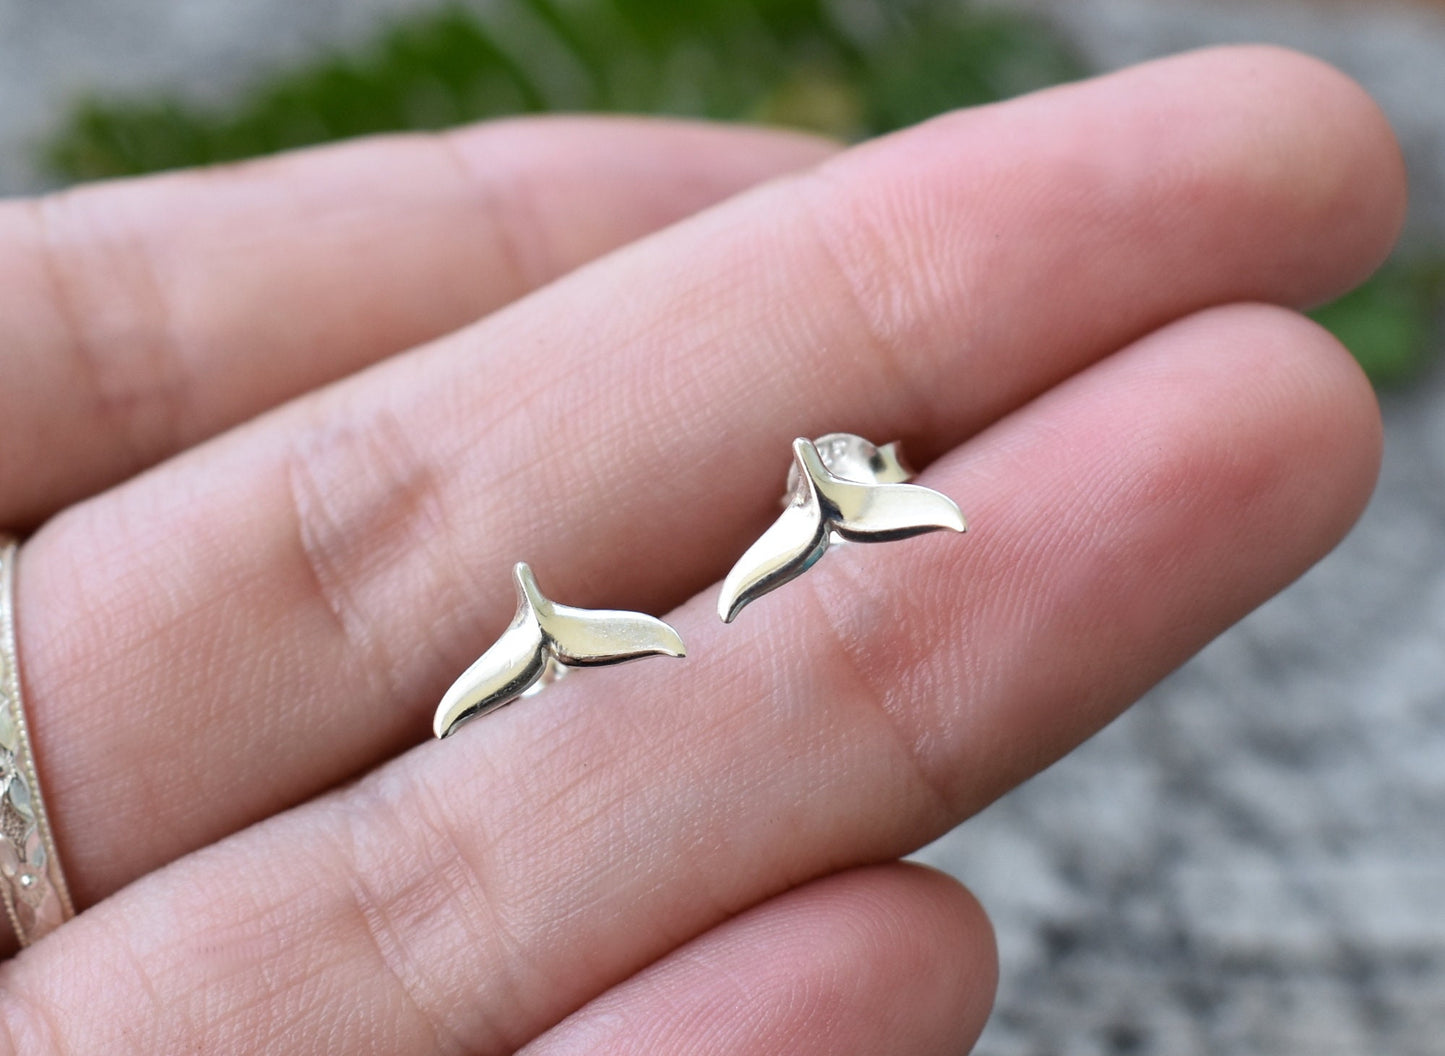 Whale Tail Earrings- Whale Stud Earrings, Whale Tail Jewelry- Silver Earrings